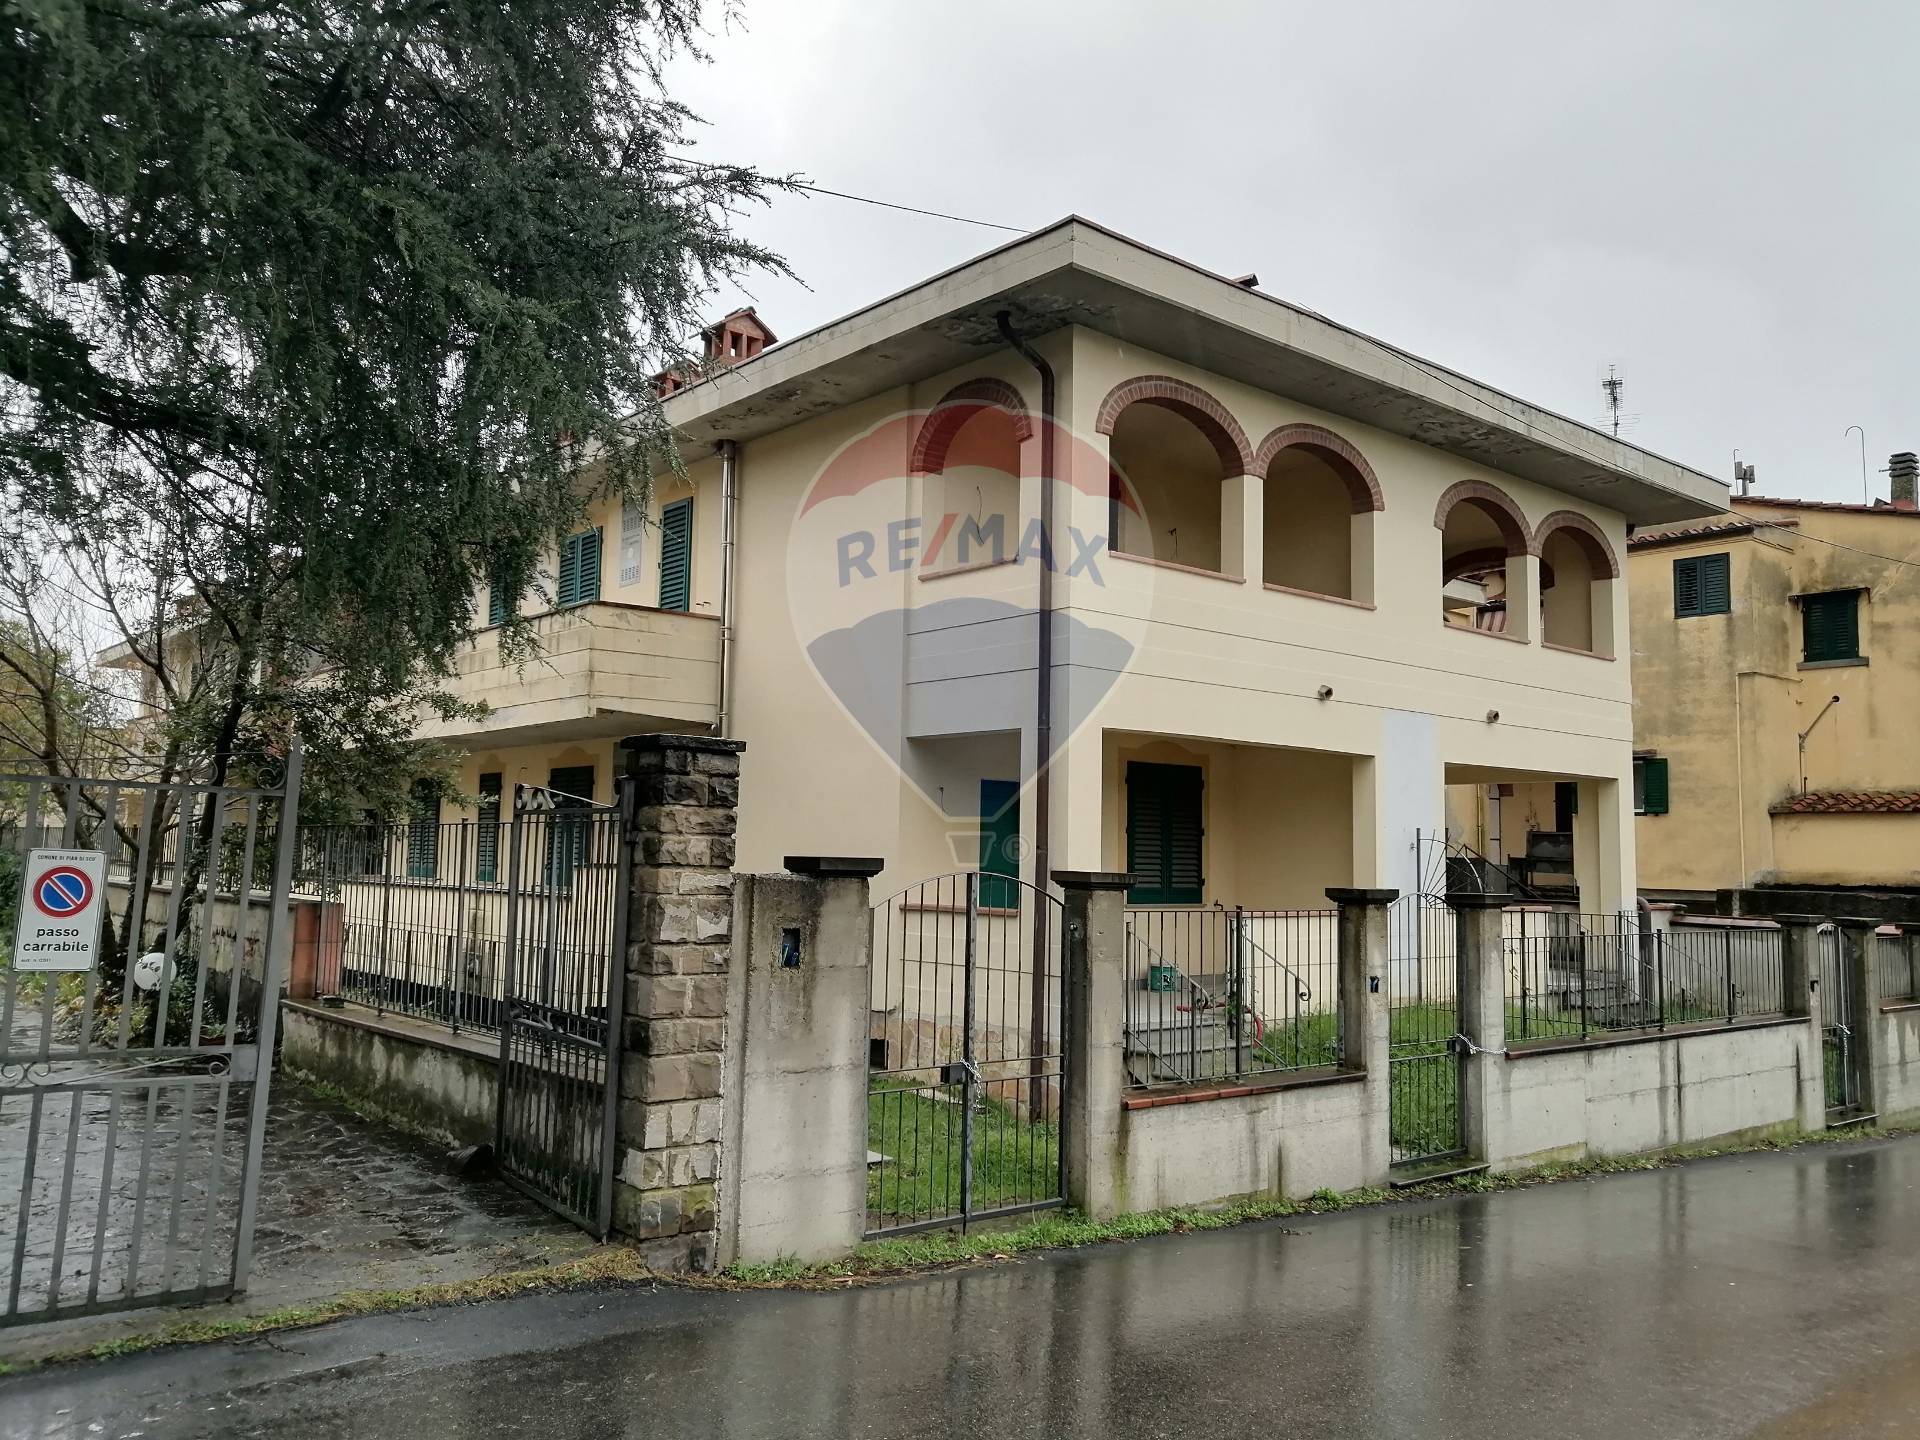 Palazzo / Stabile in vendita a Castelfranco Piandiscò, 9999 locali, zona Località: Centro, prezzo € 640.000 | CambioCasa.it